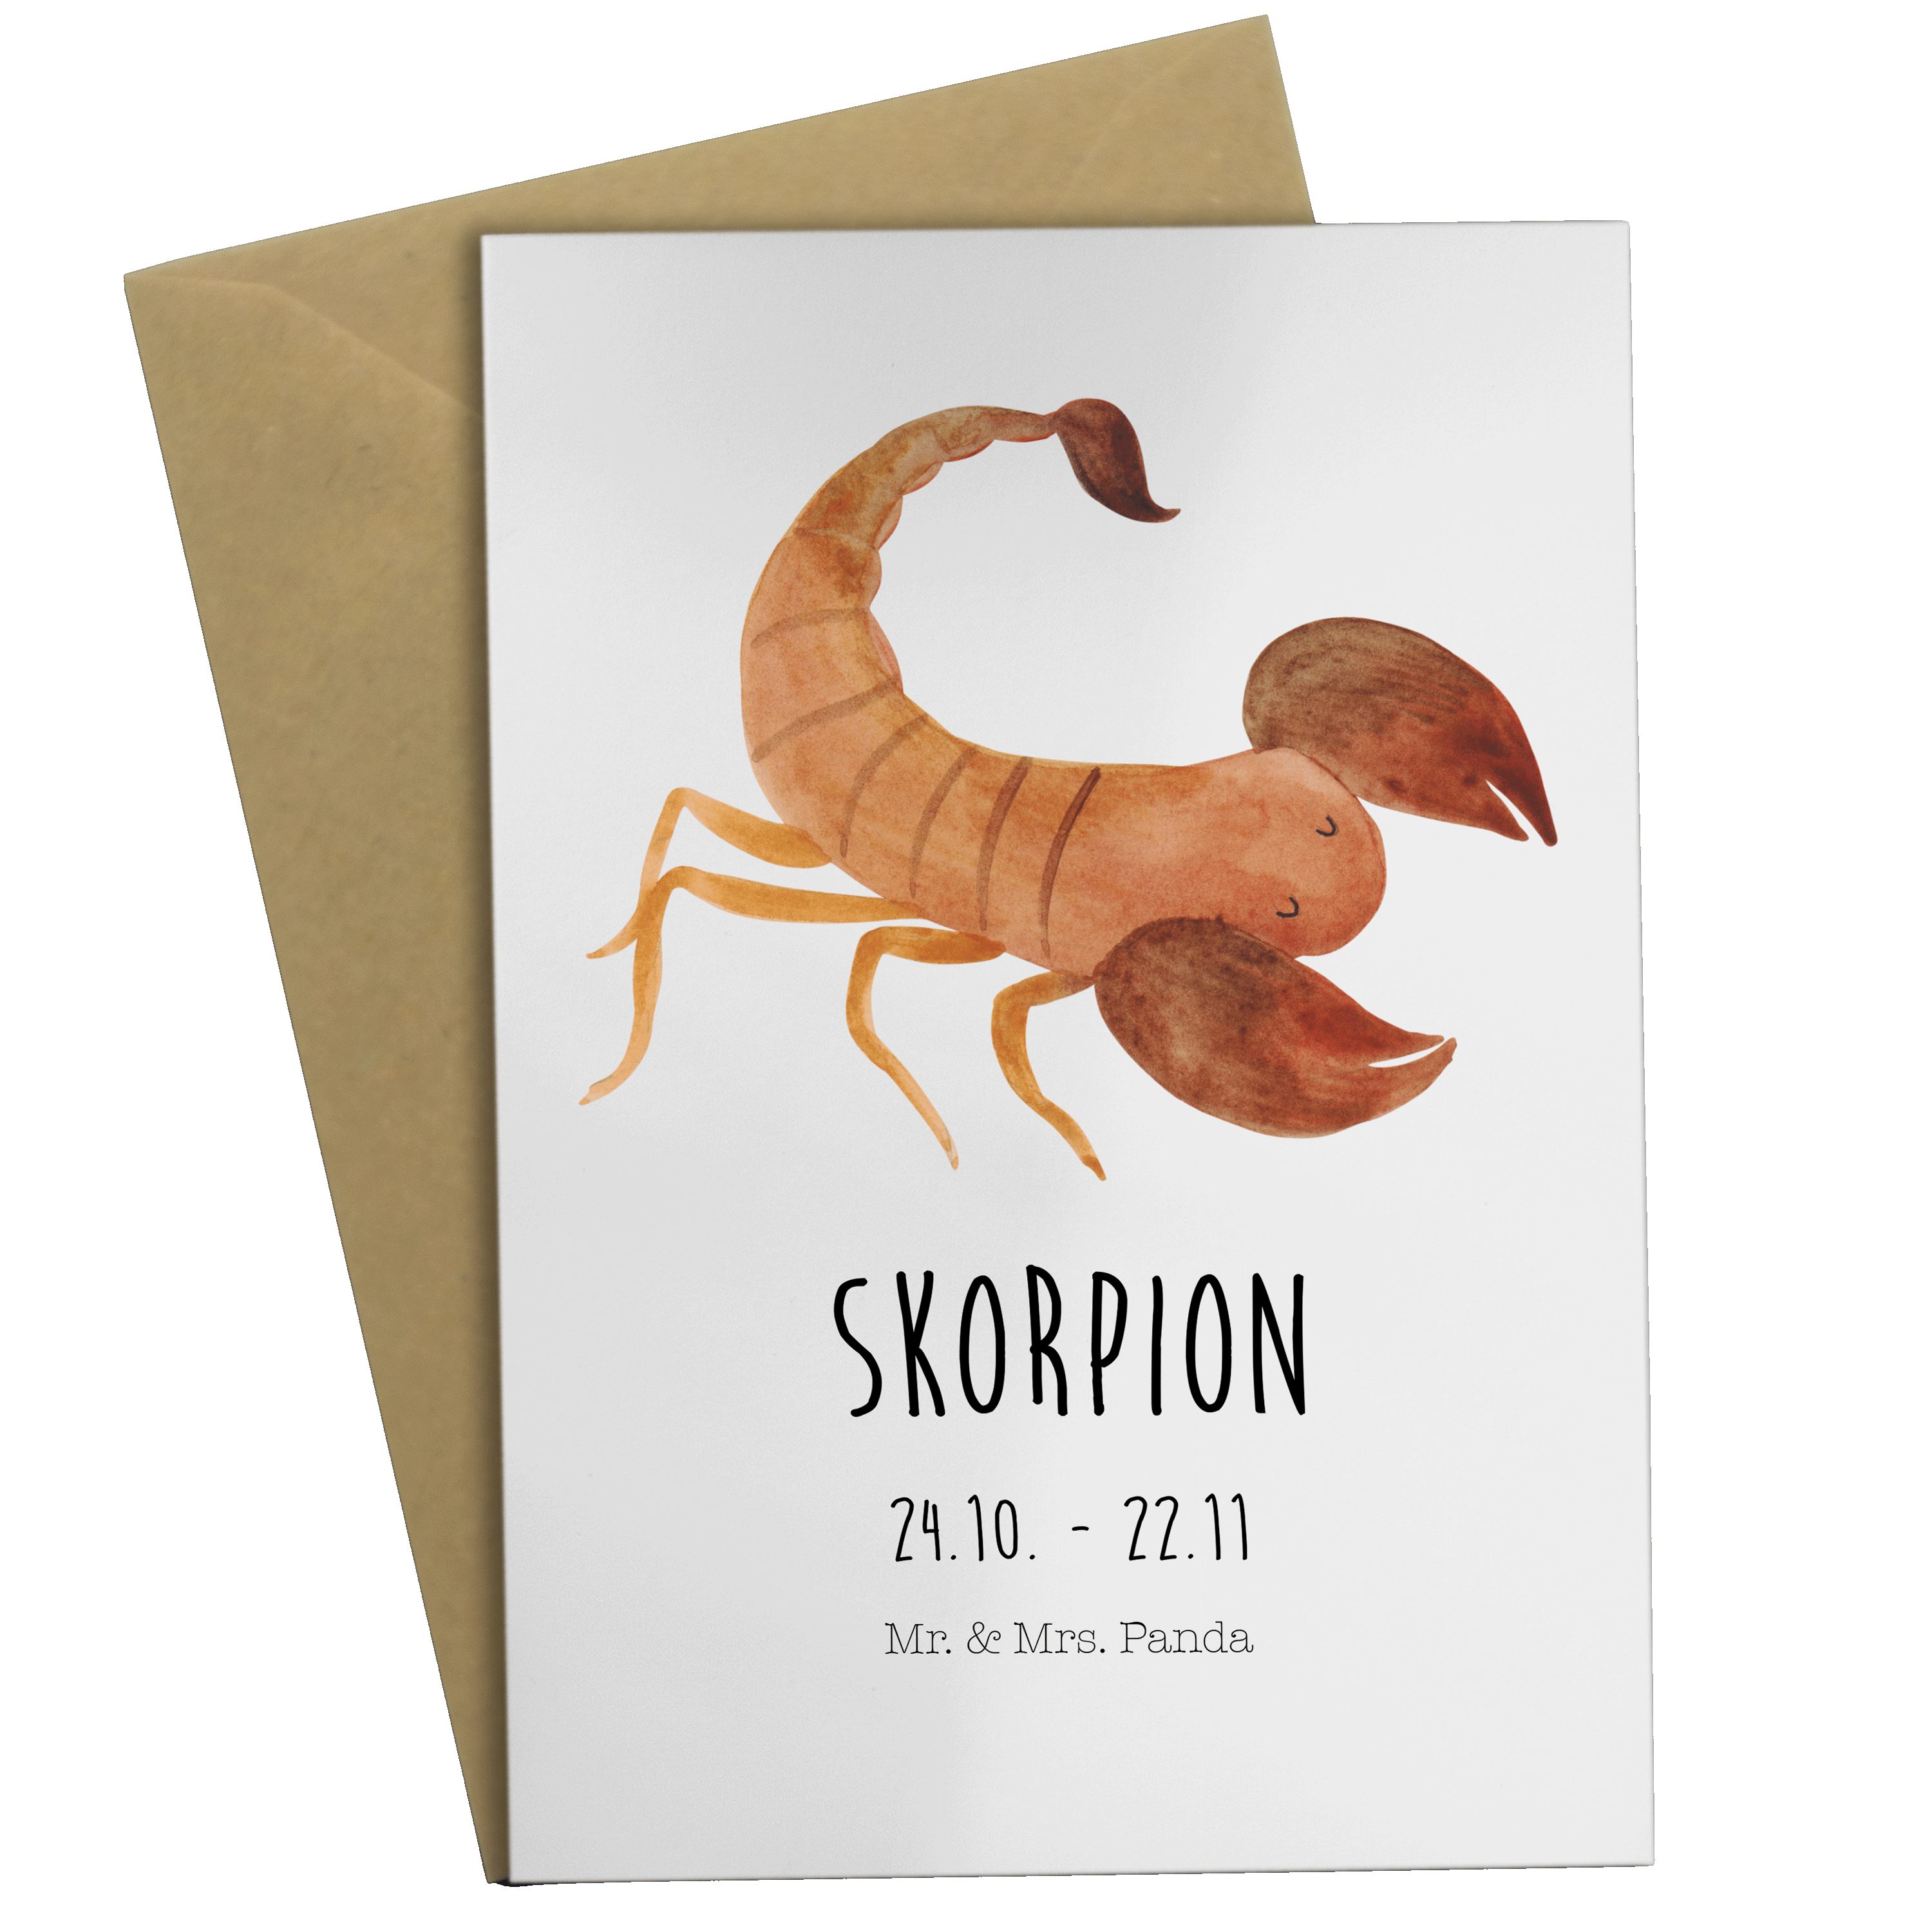 Mr. & Mrs. Panda - Horoskop, Classic Weiß Grußkarte Sternzeichen Geschenk, Skorpion - Tierkreisz